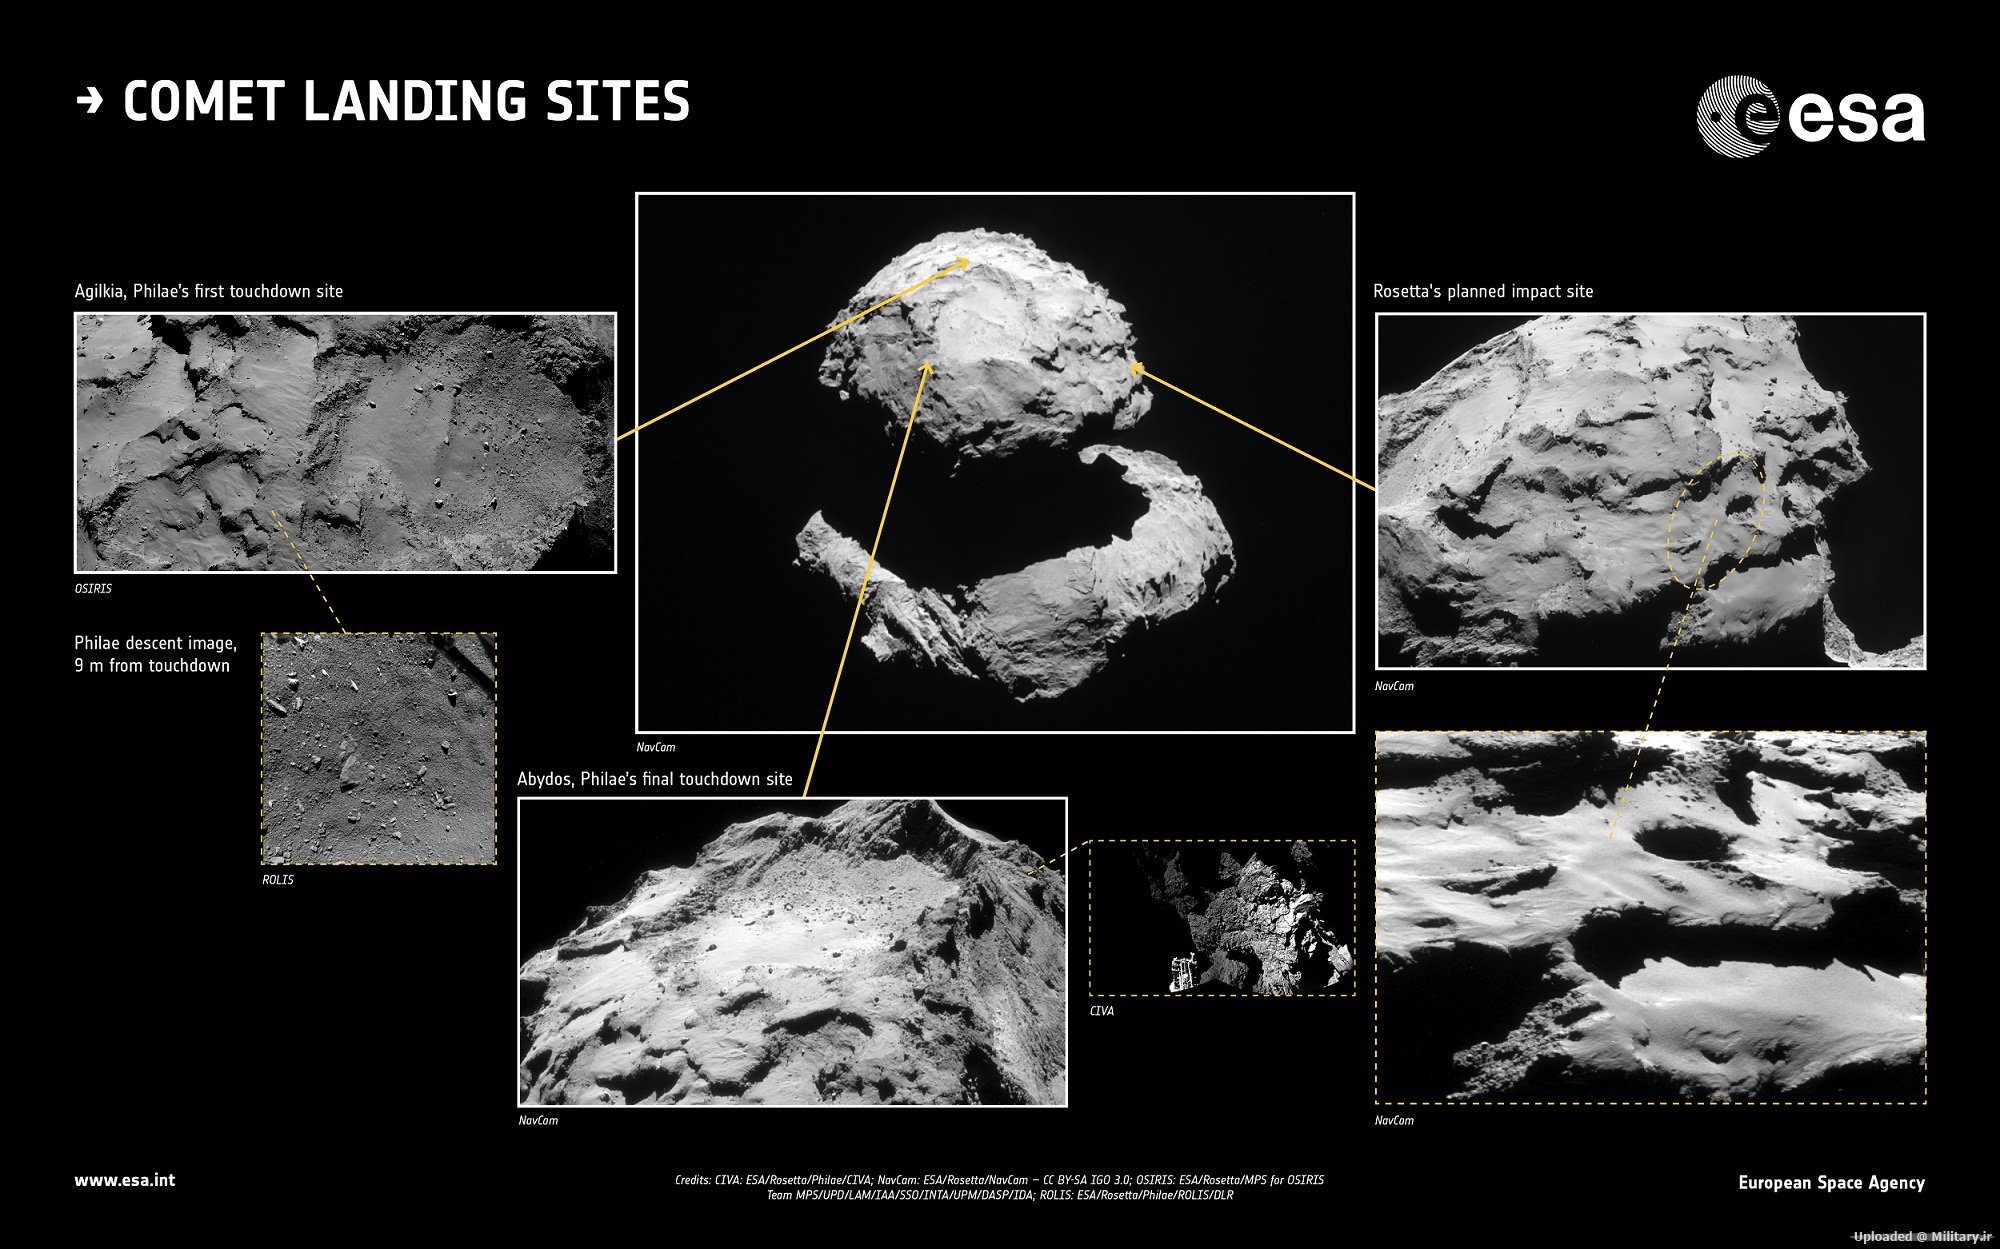 Comet_landing_sites_in_context_Mitary_ir